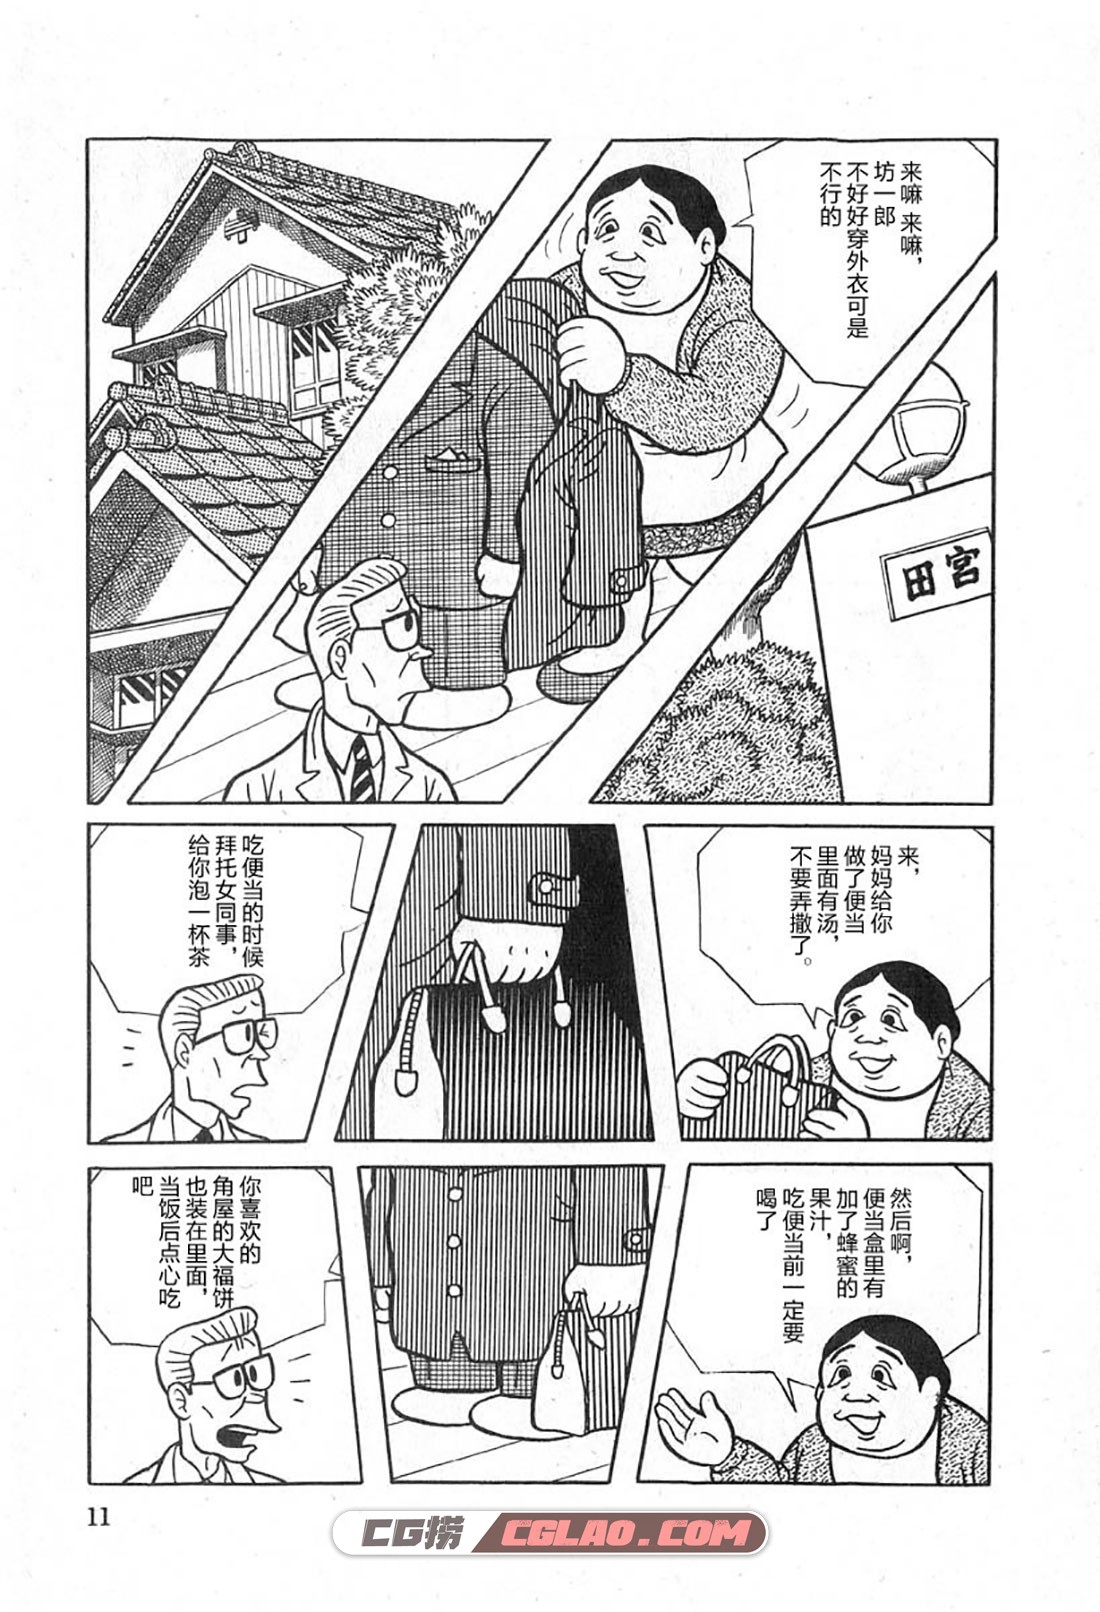 藤子不二雄A黑色幽默短篇集 1卷 短篇漫画百度云网盘下载,0010.jpg